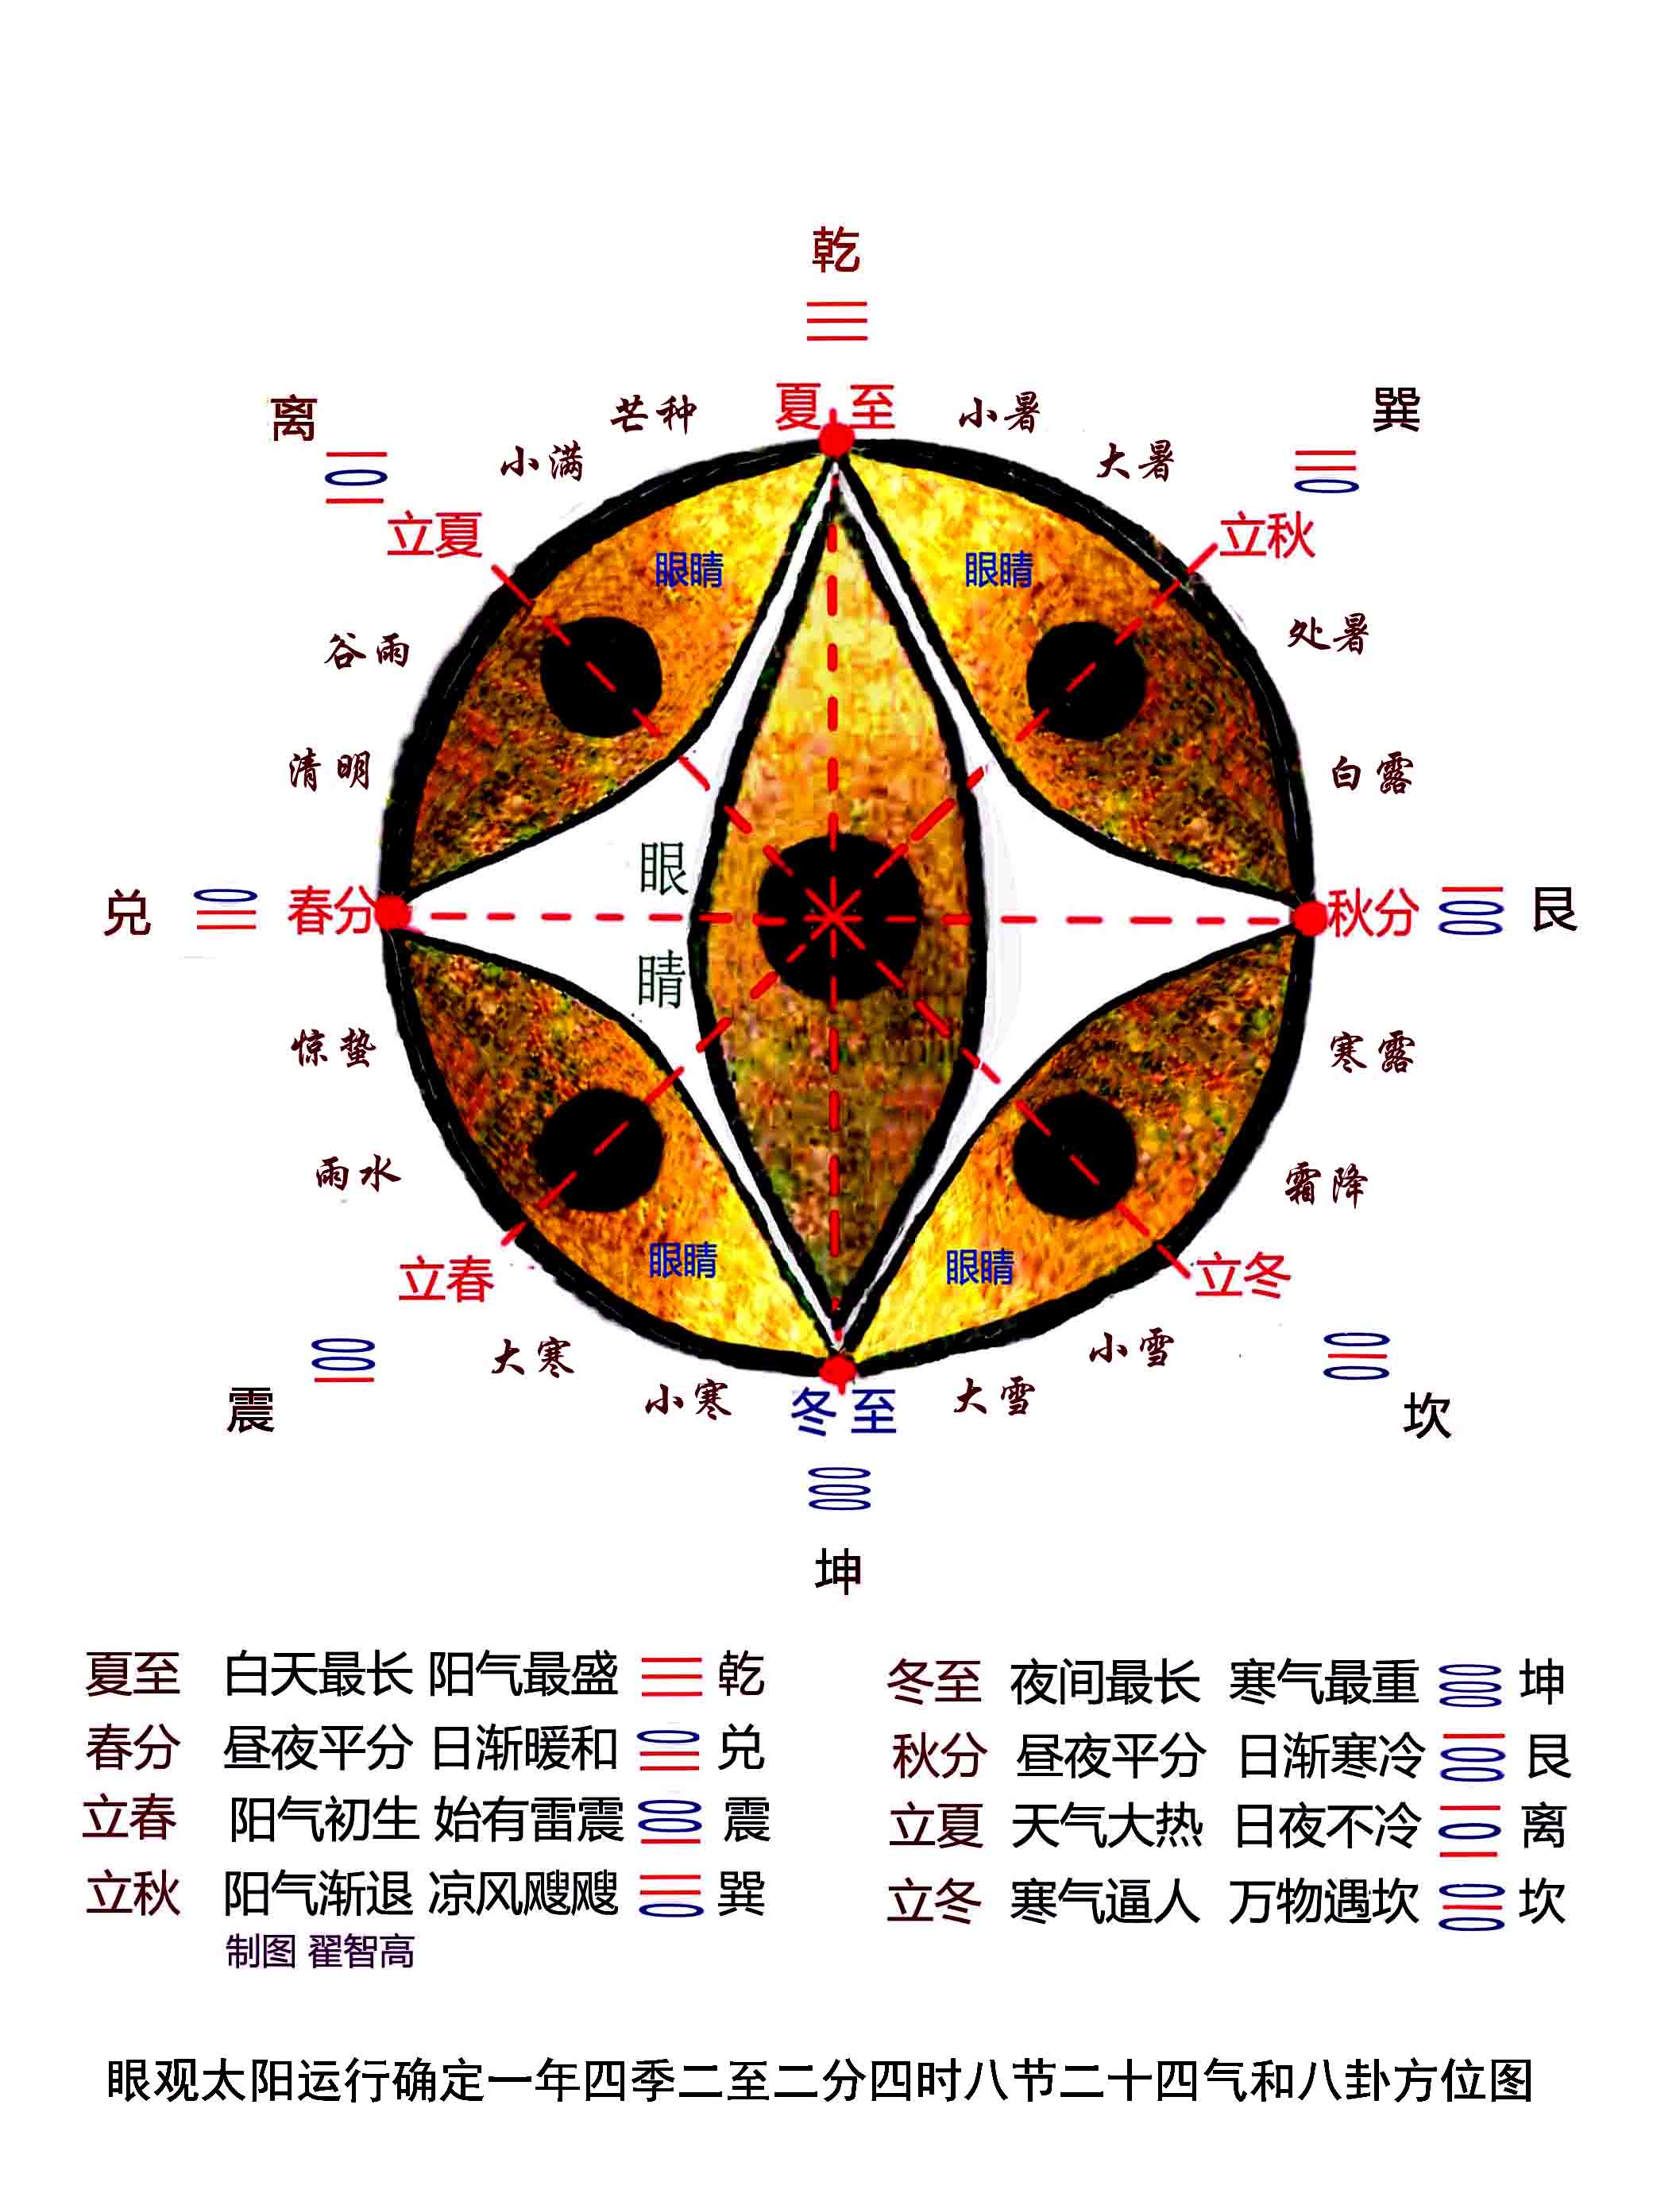 伊川缸解析：眼观太阳运行确定一年四季二至二分四时八节二十四气和八卦方位图.jpg